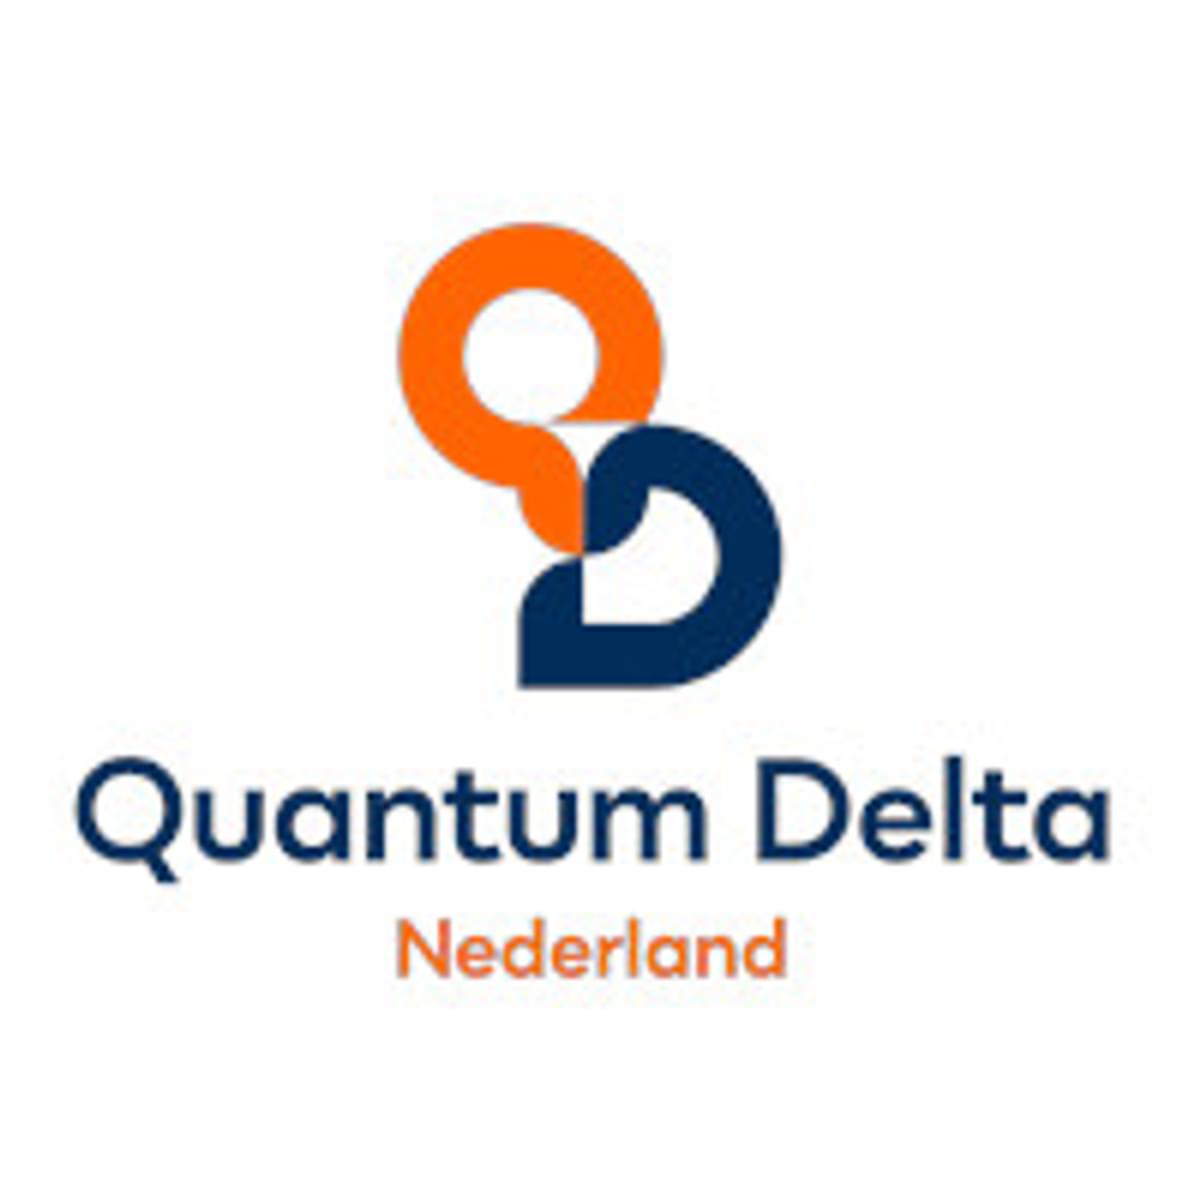 Quantum Delta NL brengt quantum startups in contact met investeerders image